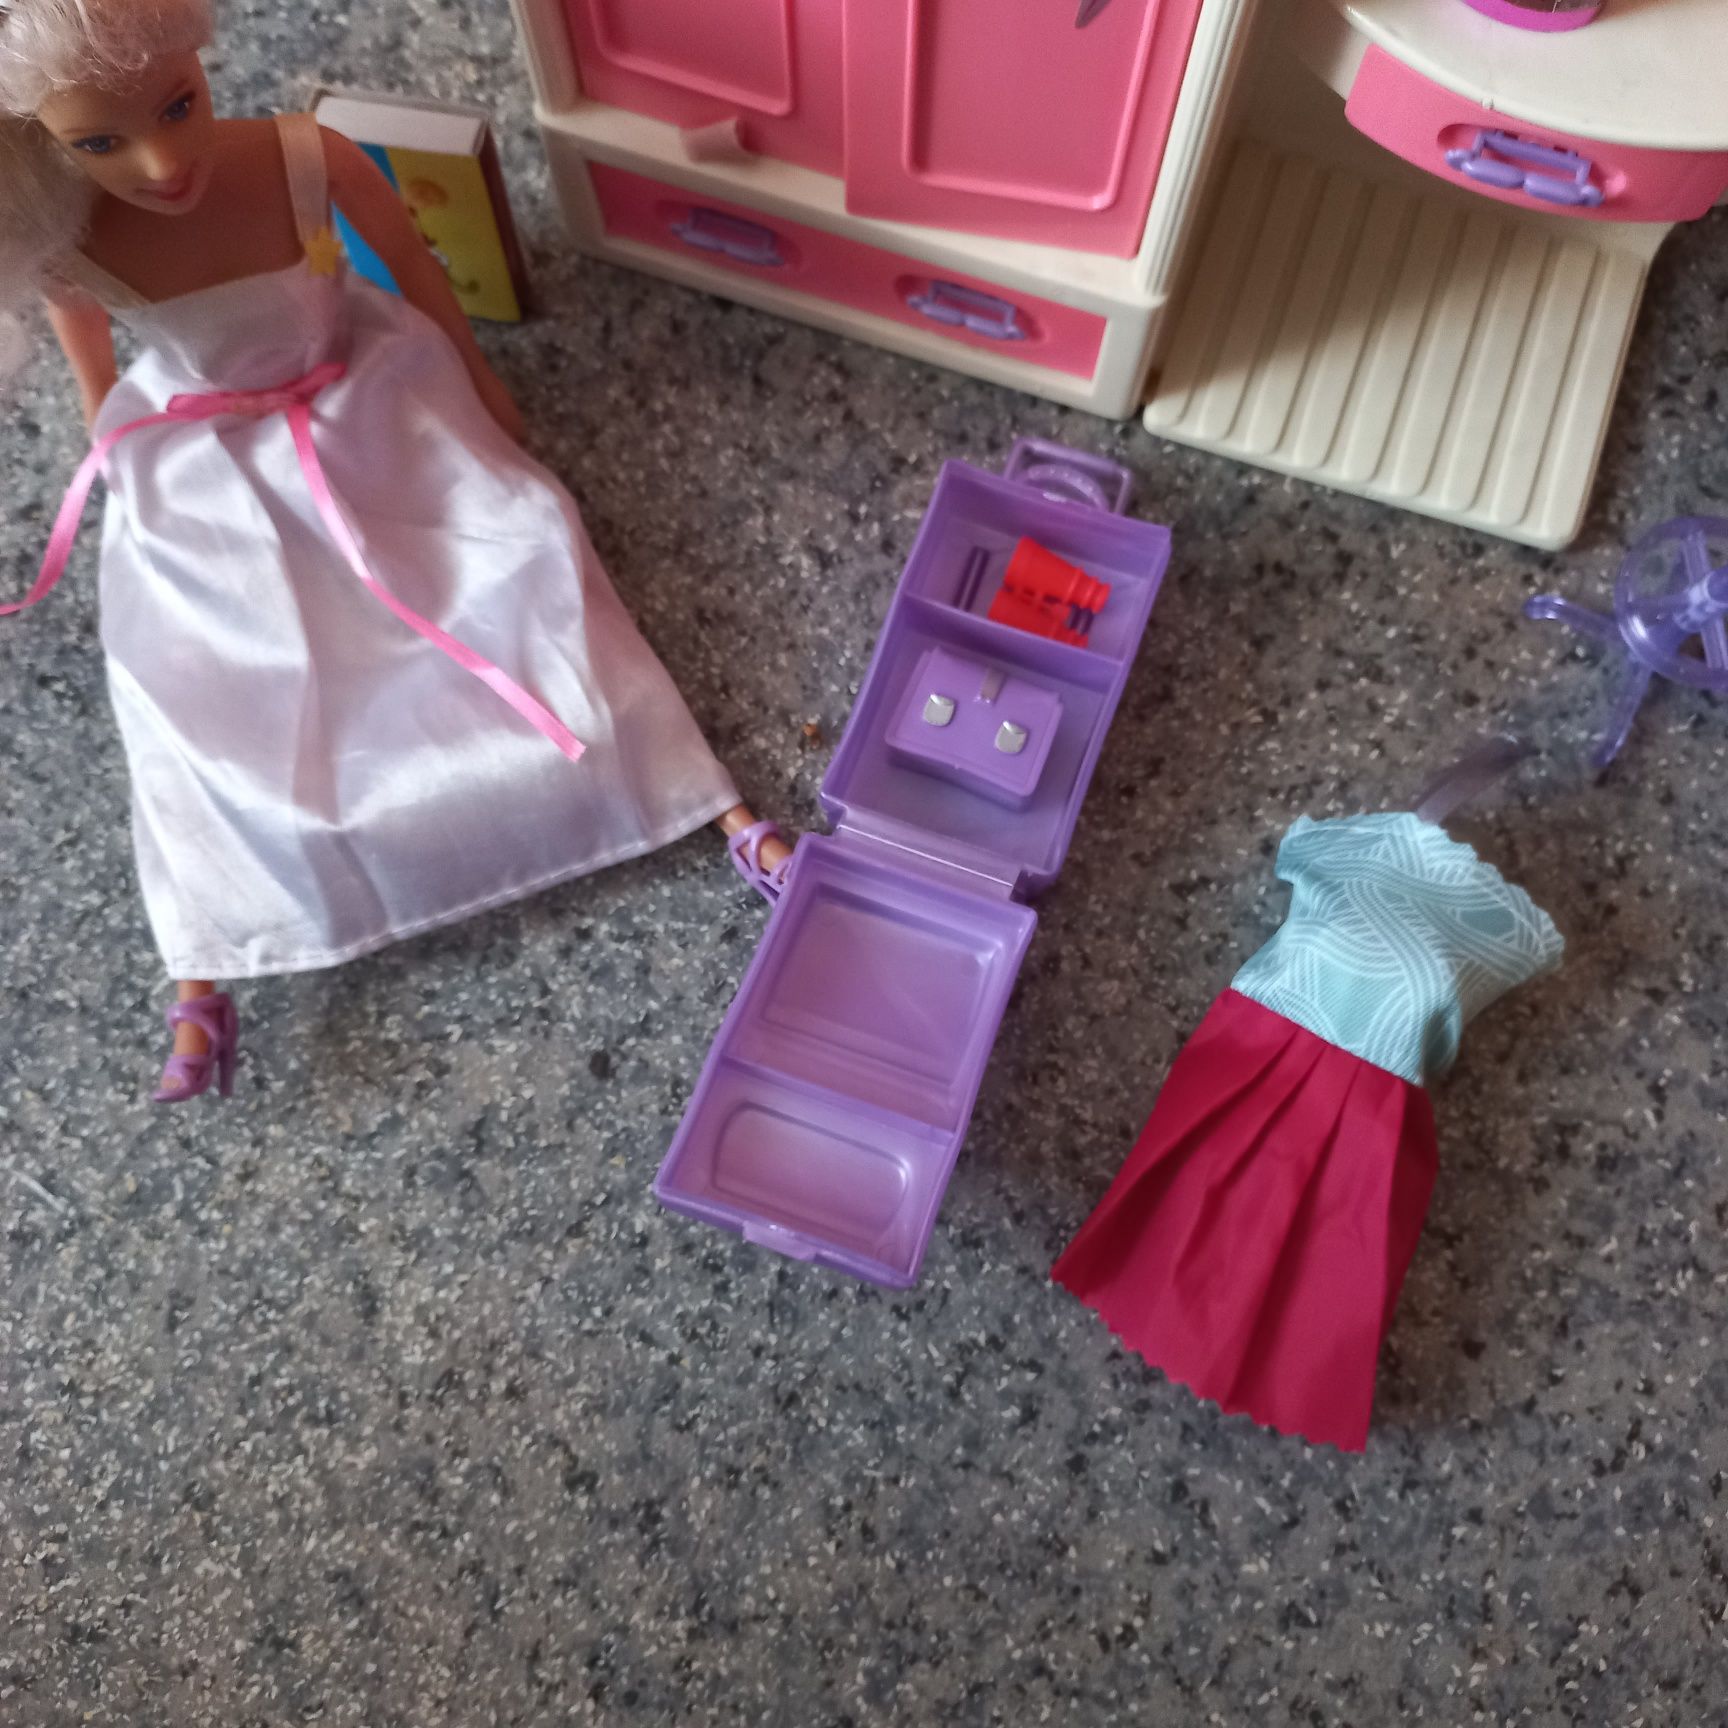 Шкаф с аксессуарами и куколкой  Барби